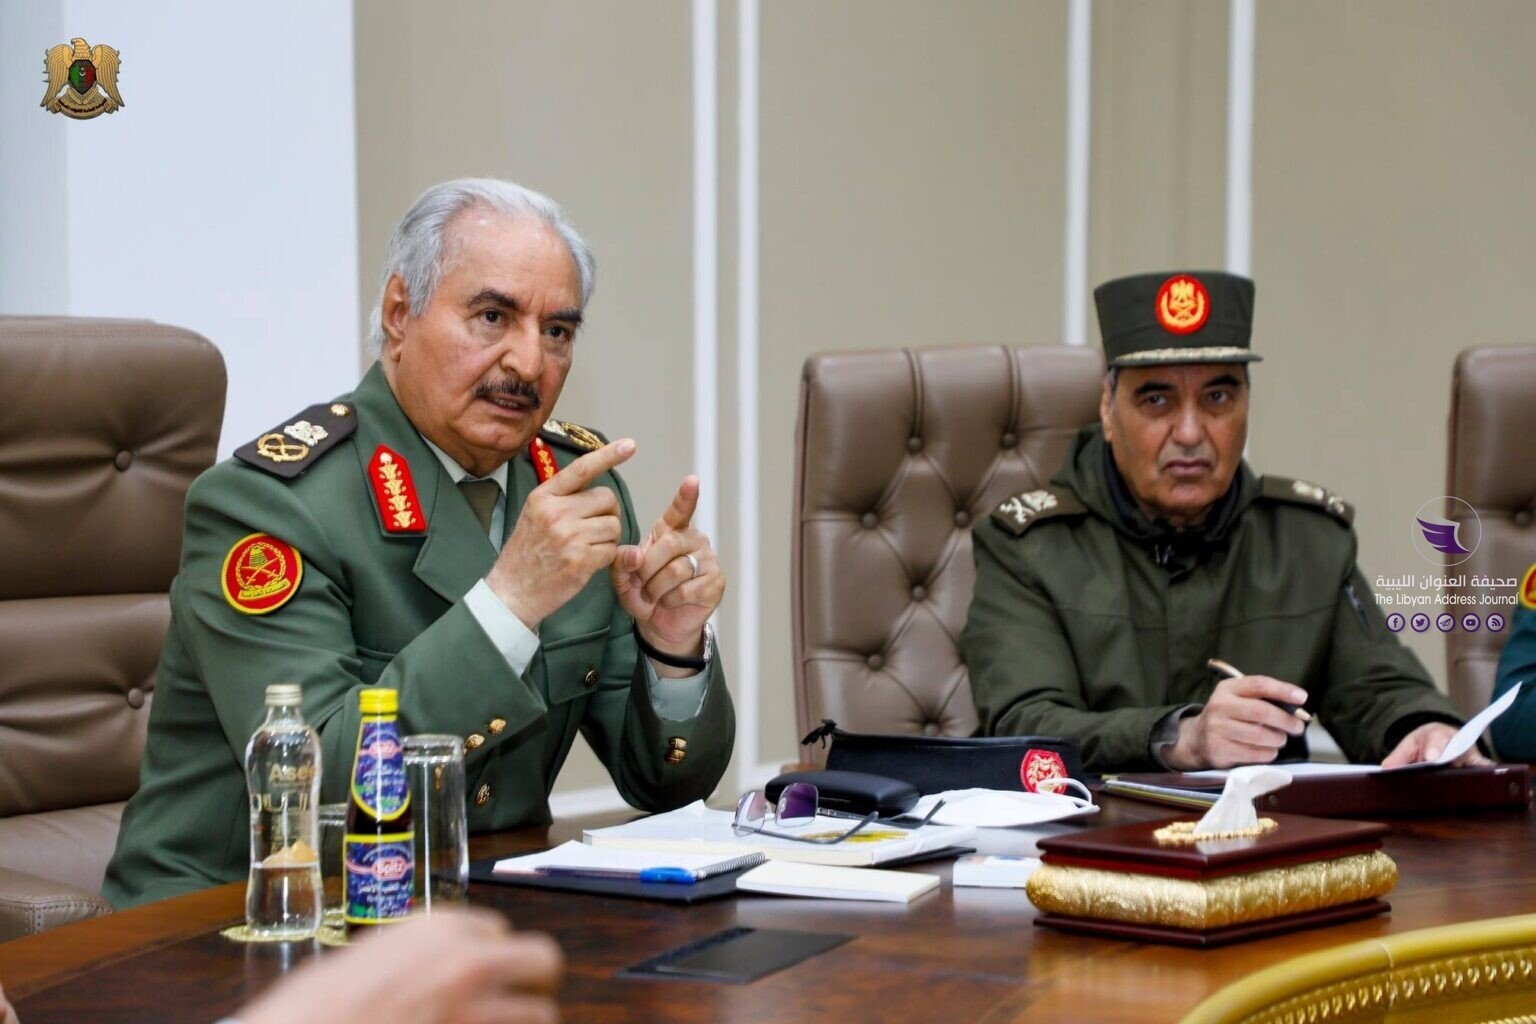 القائد العام يثمن دور القبائل الليبية في المحافظة على النسيج الاجتماعي والمصالحة - 2 1536x1024 1